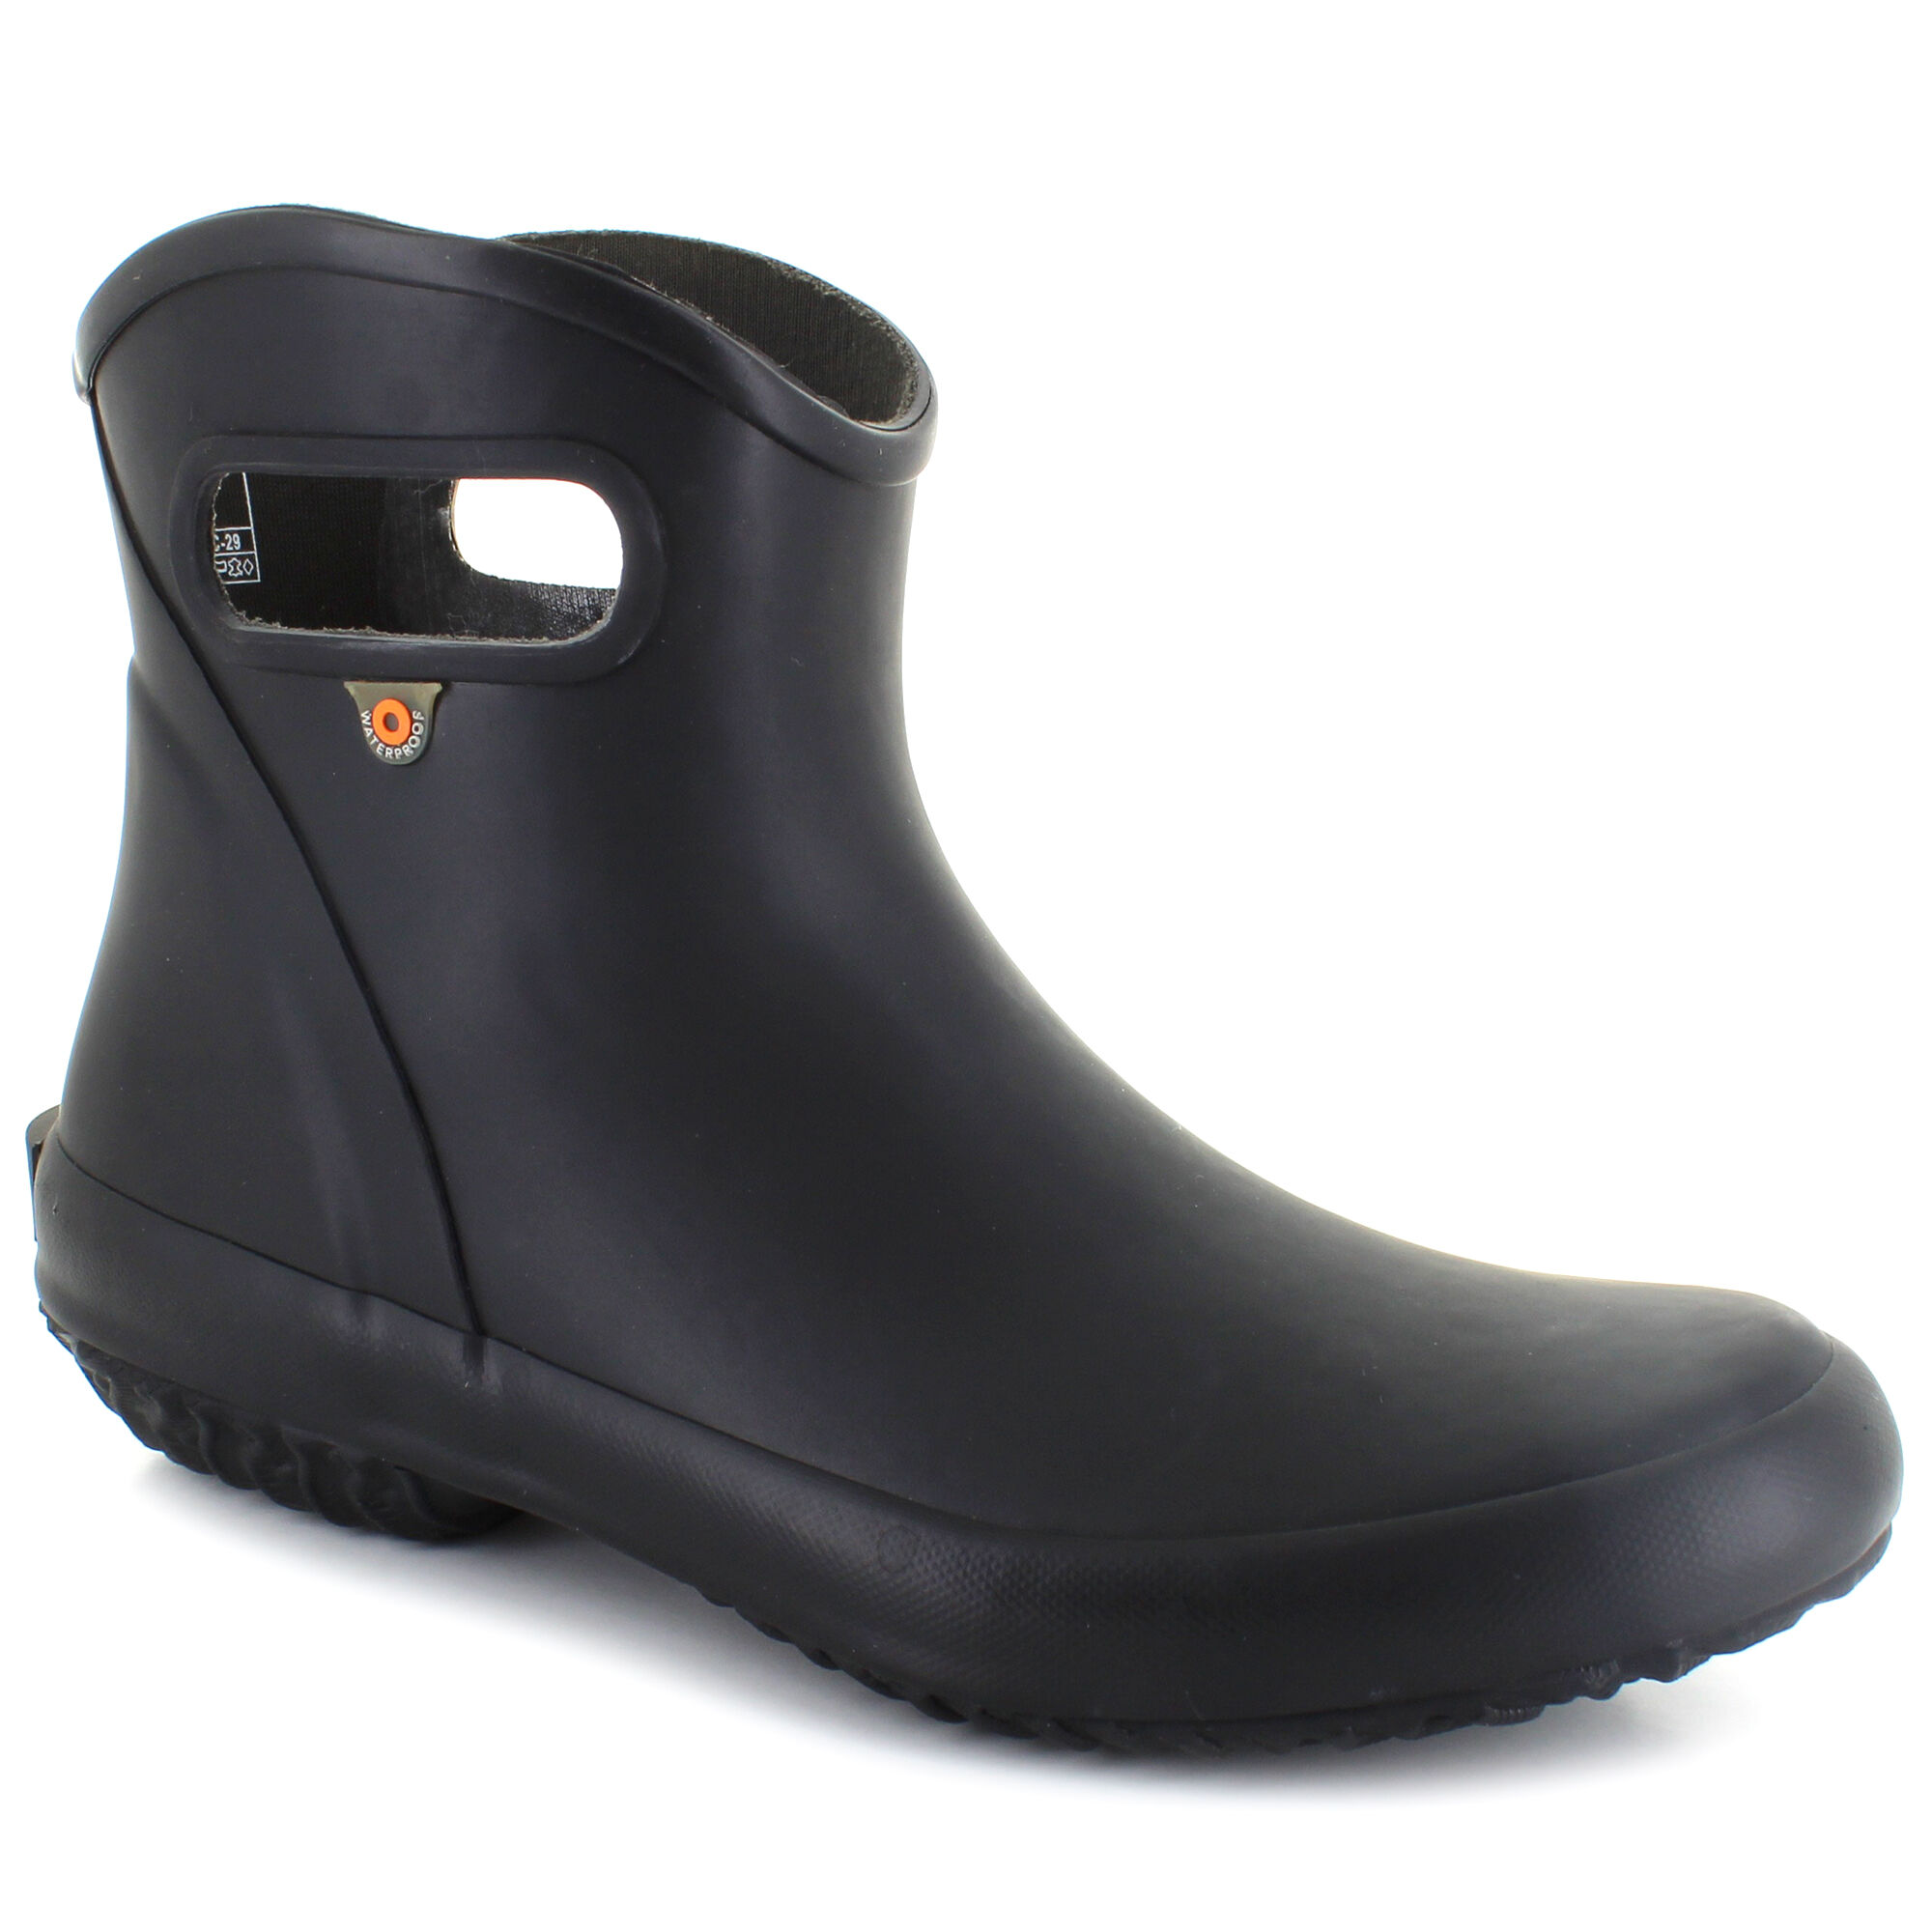 shoe dept rain boots